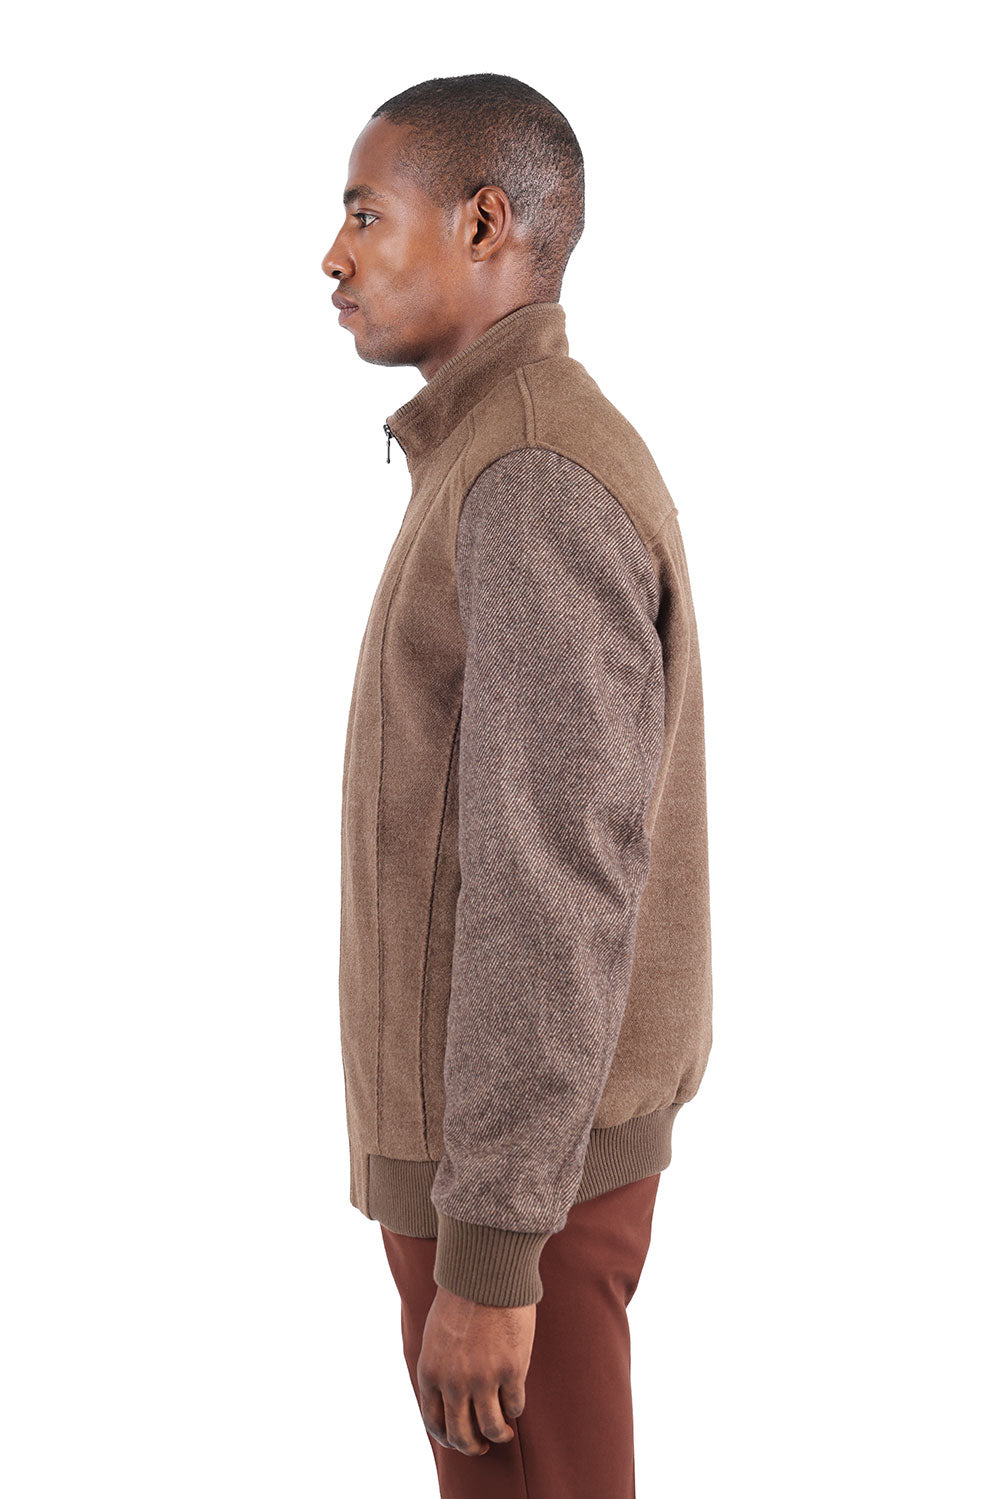 Barabas Men's Suede Warm Comfortable Varsity Jacket 3BH84 Brown